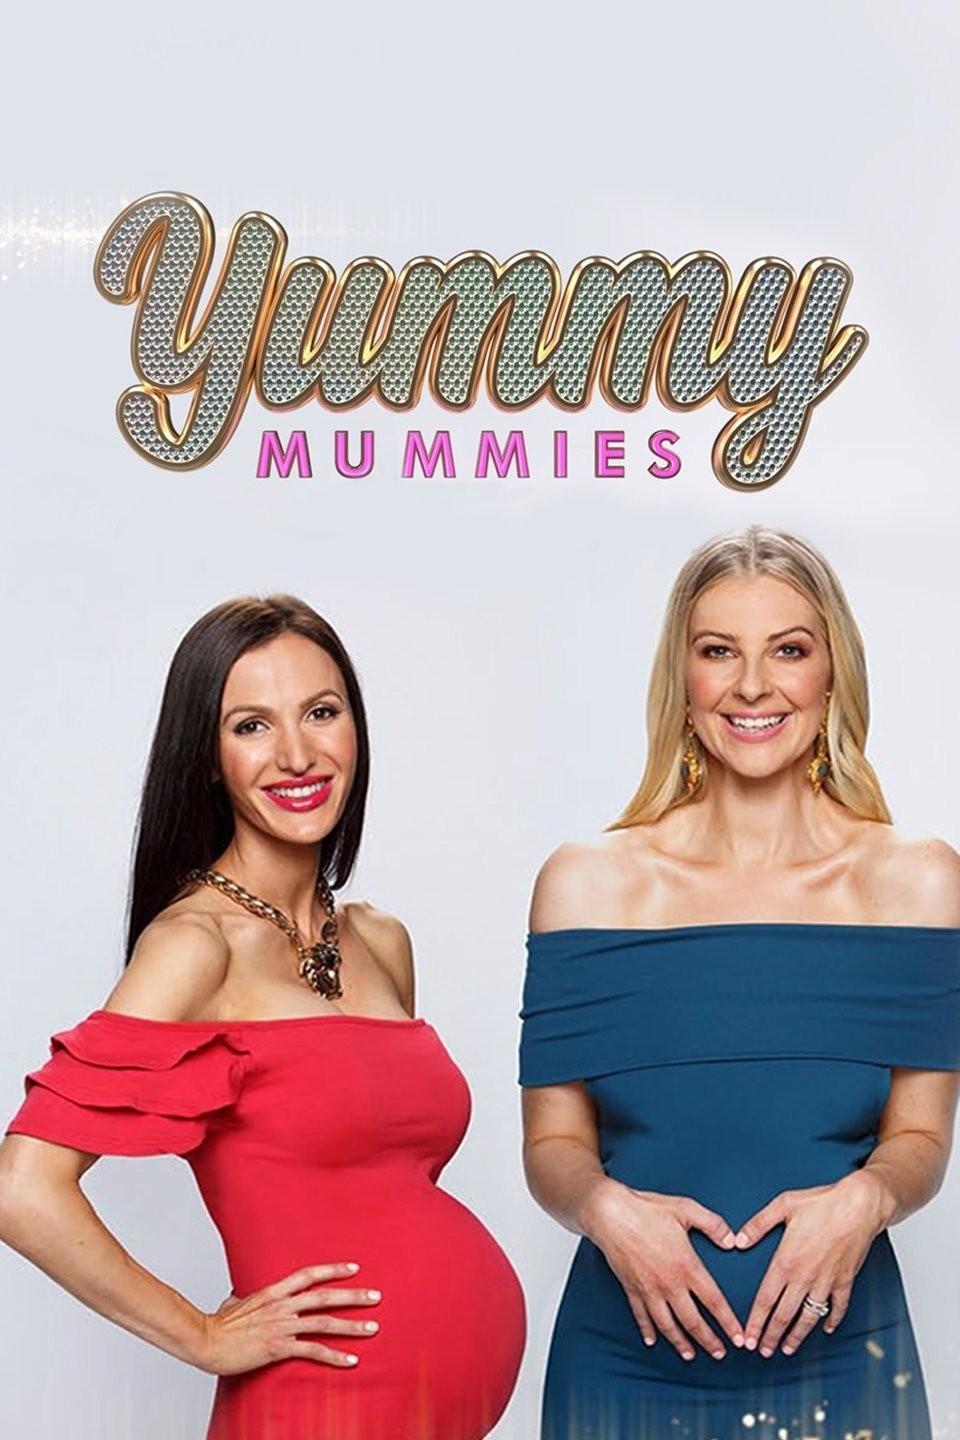 Meet the Cast of Netflix's 'Yummy Mummies